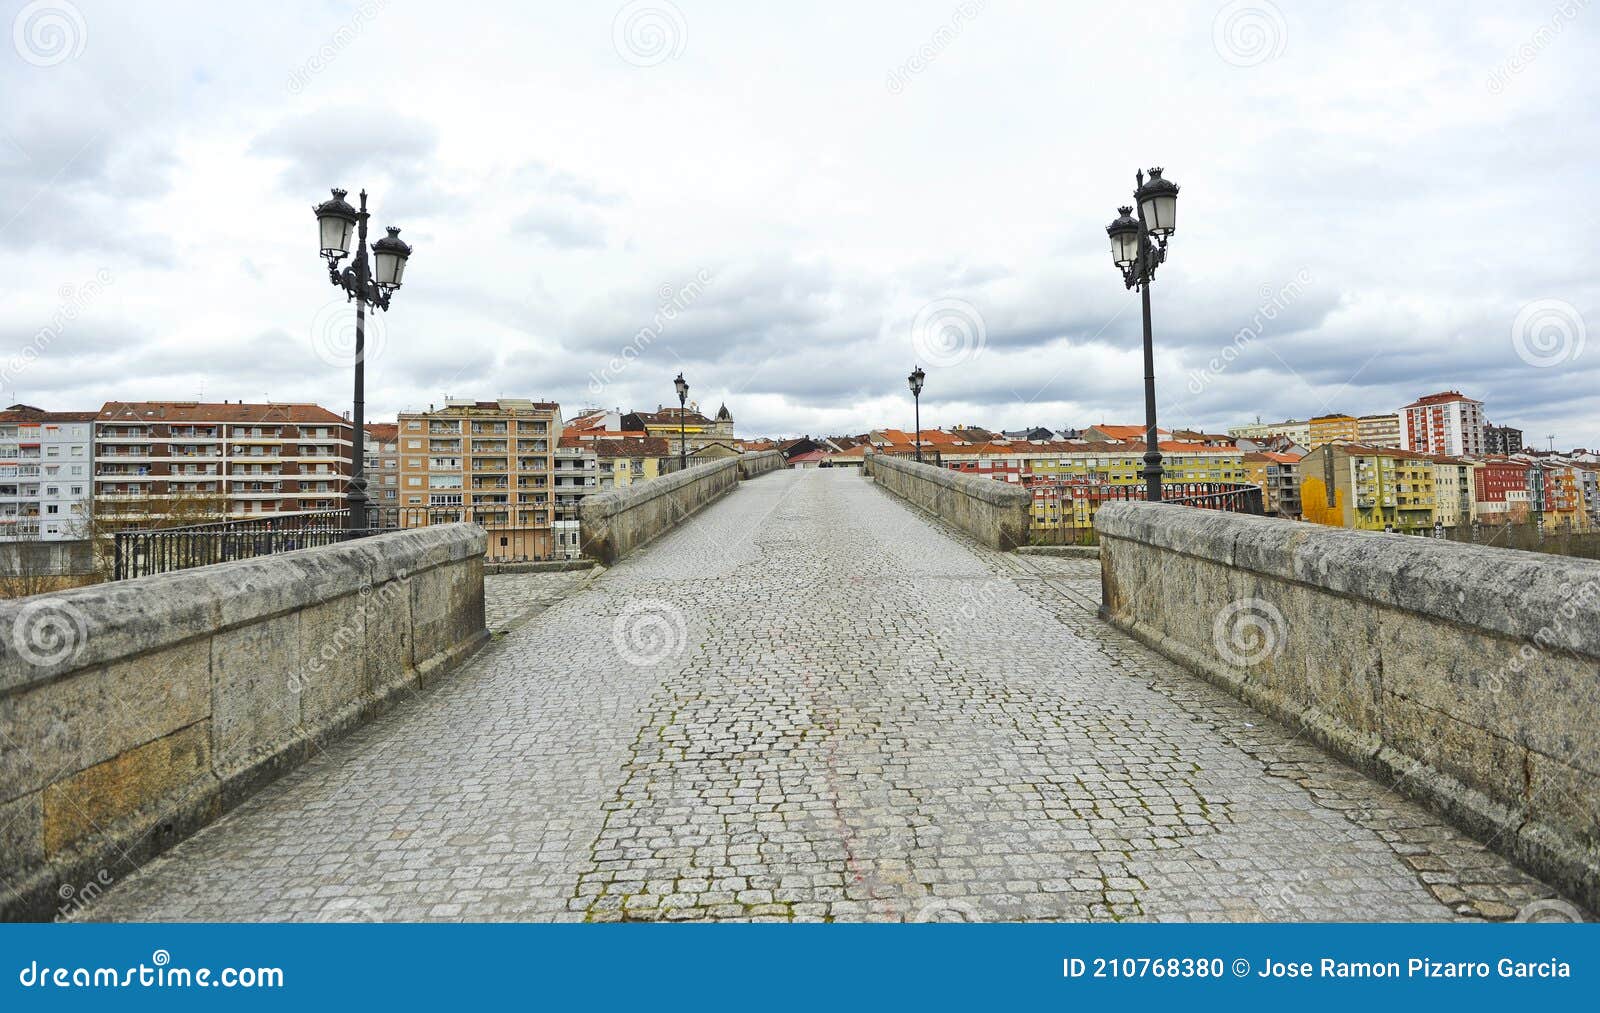 puente medieval puente romano sobre el rio miÃÂ±o en ourense orense, galicia, espaÃÂ±a